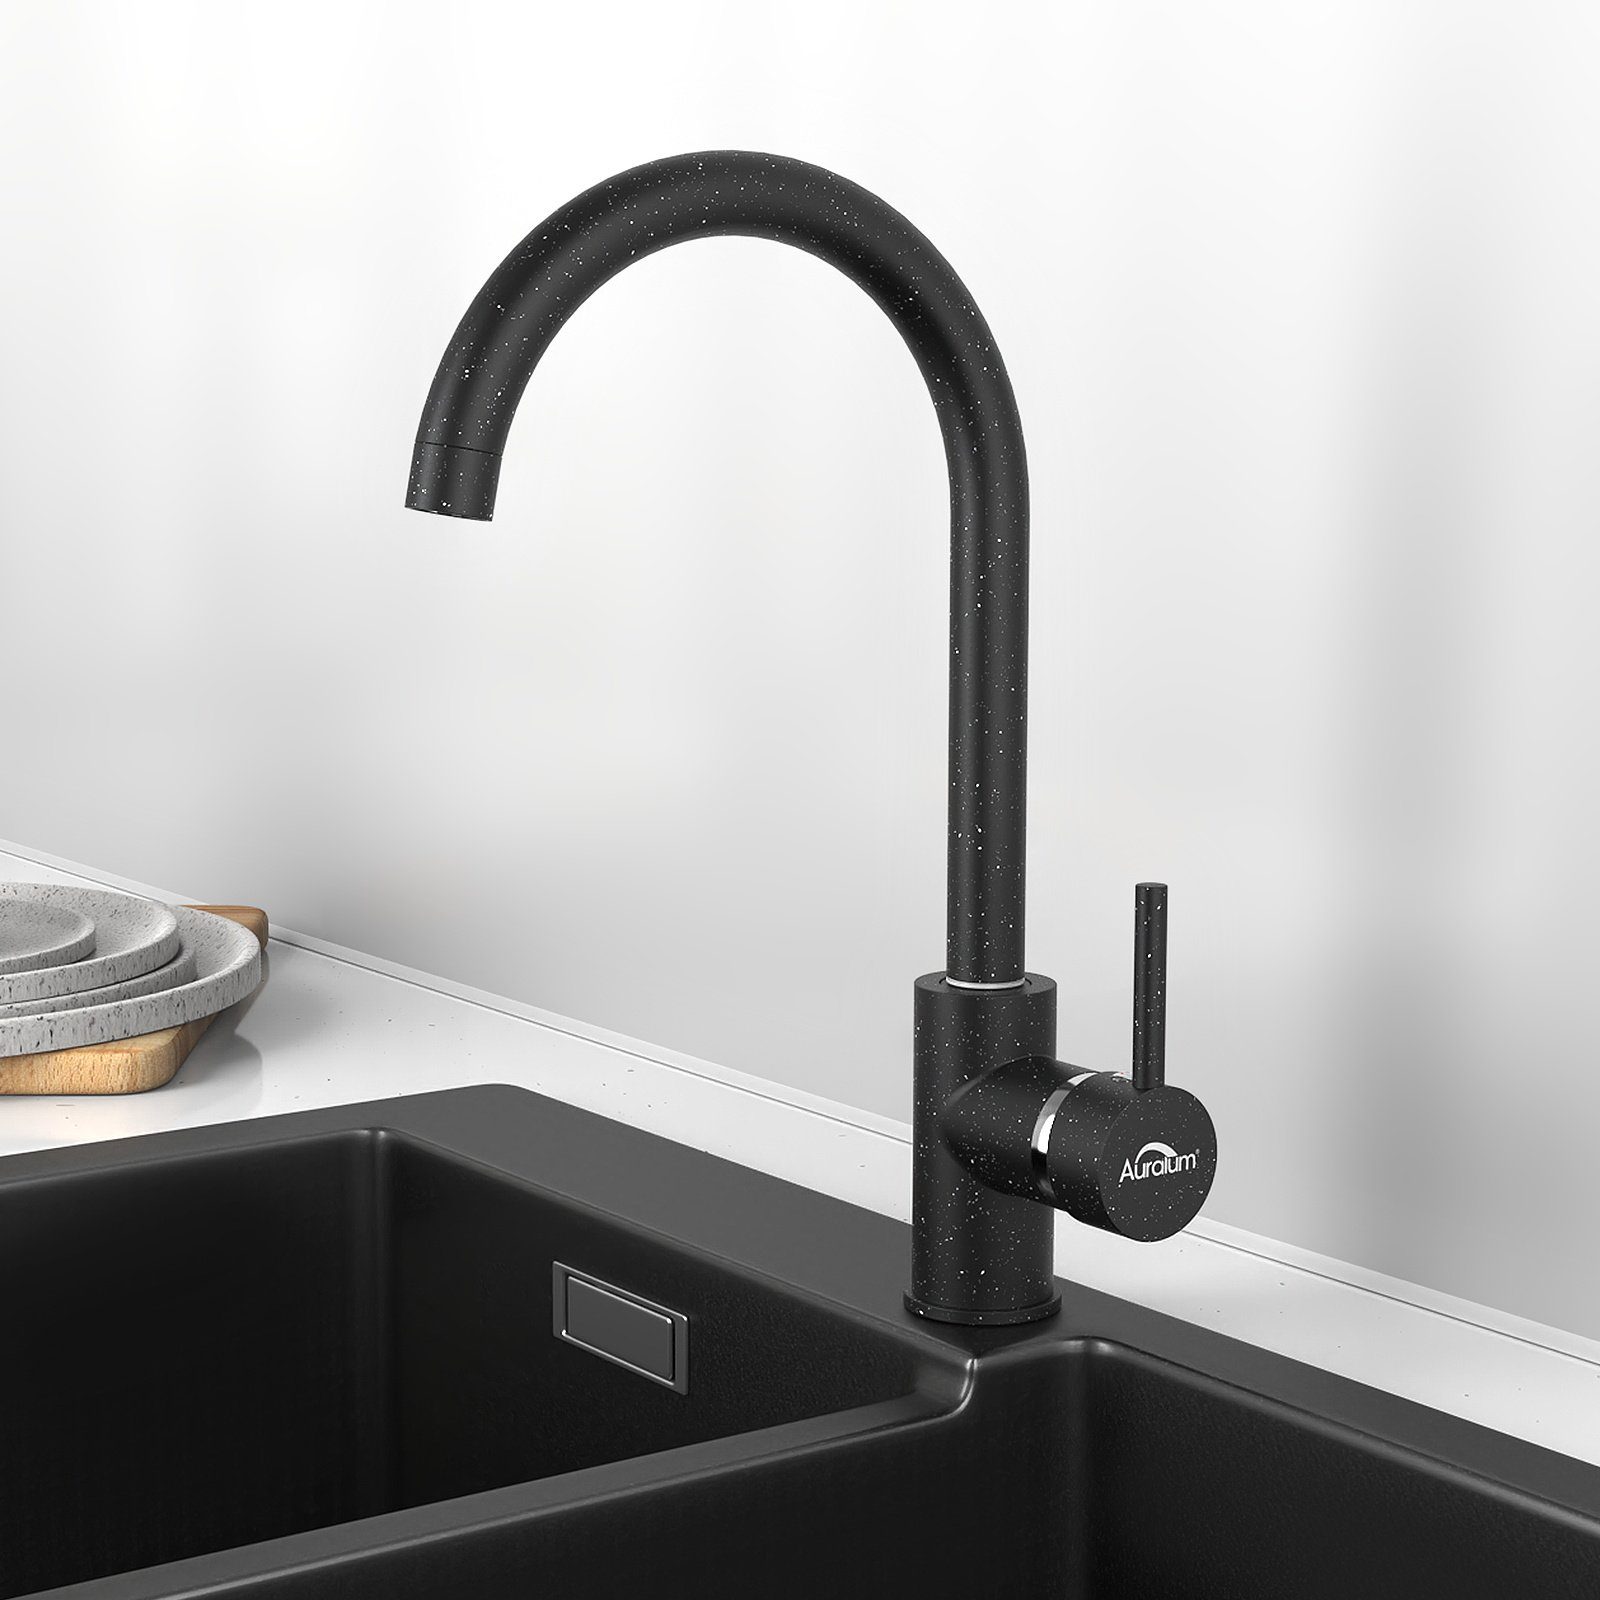 Drehbar Auralum Küche Küche 360° Küchenarmatur Armatur,Schwarz Hochdruck Mischbatterie Wasserhahn